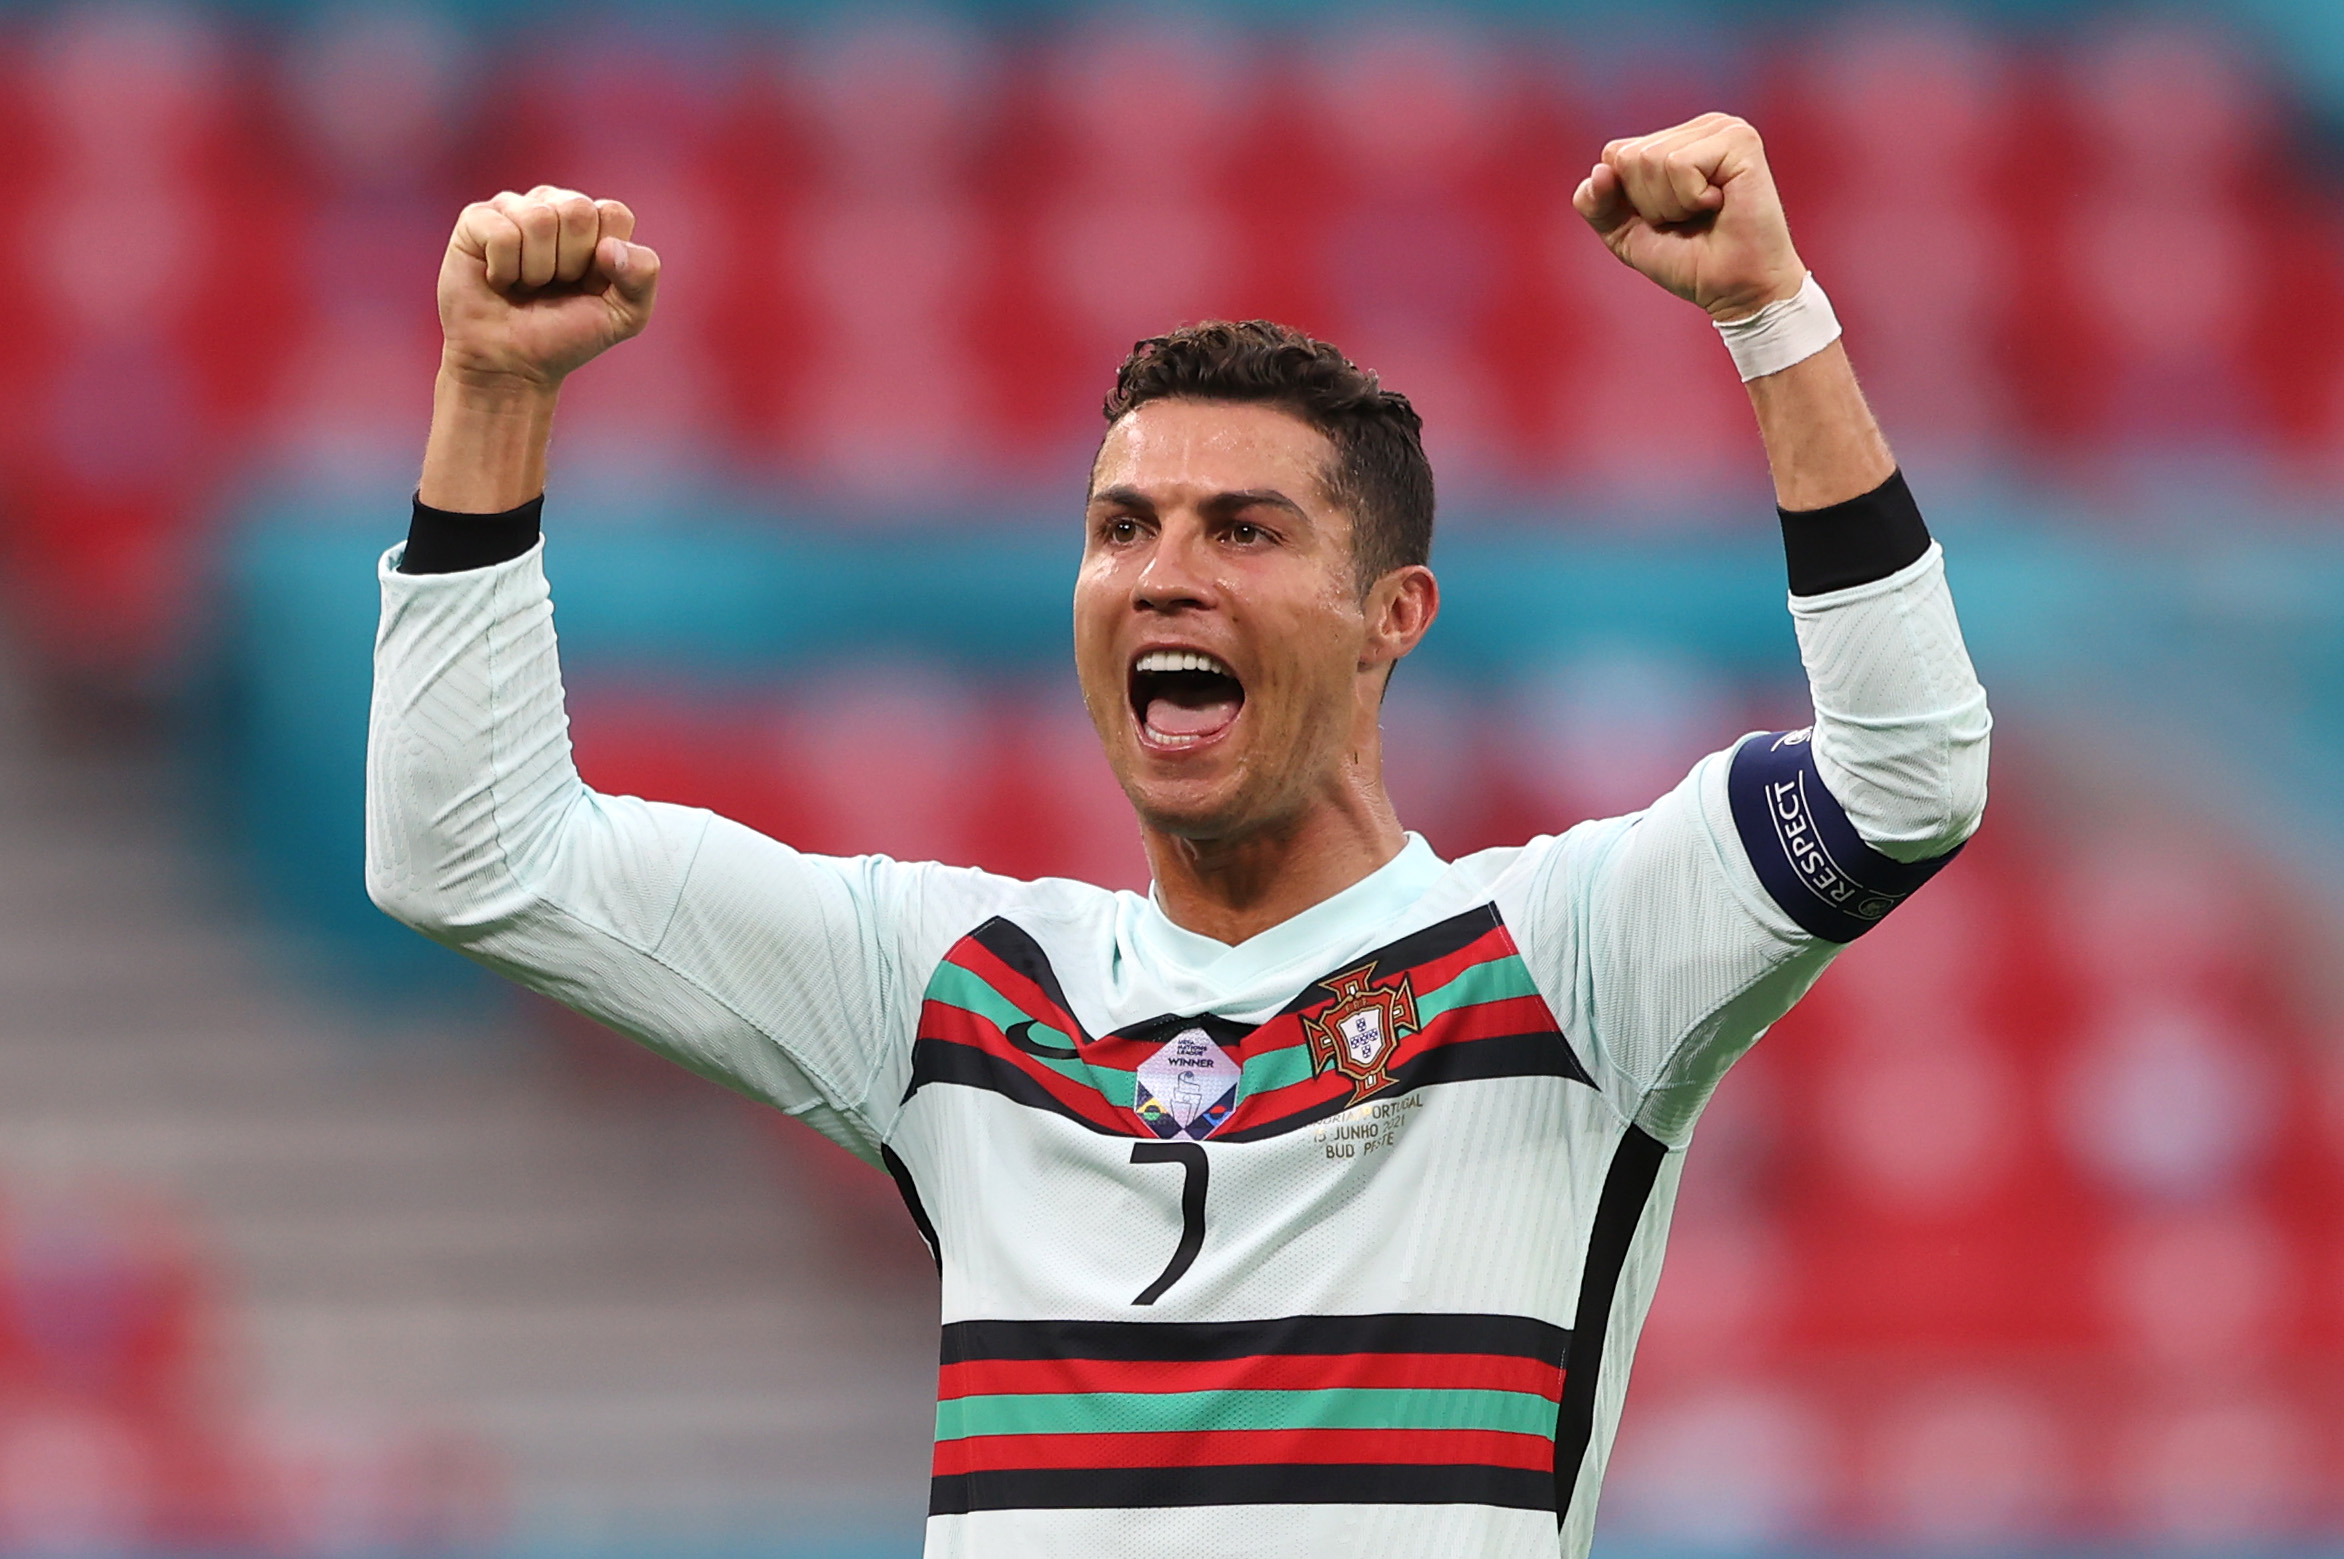 Tendance : Cristiano Ronaldo devient le meilleur buteur de tous les temps à l'EURO